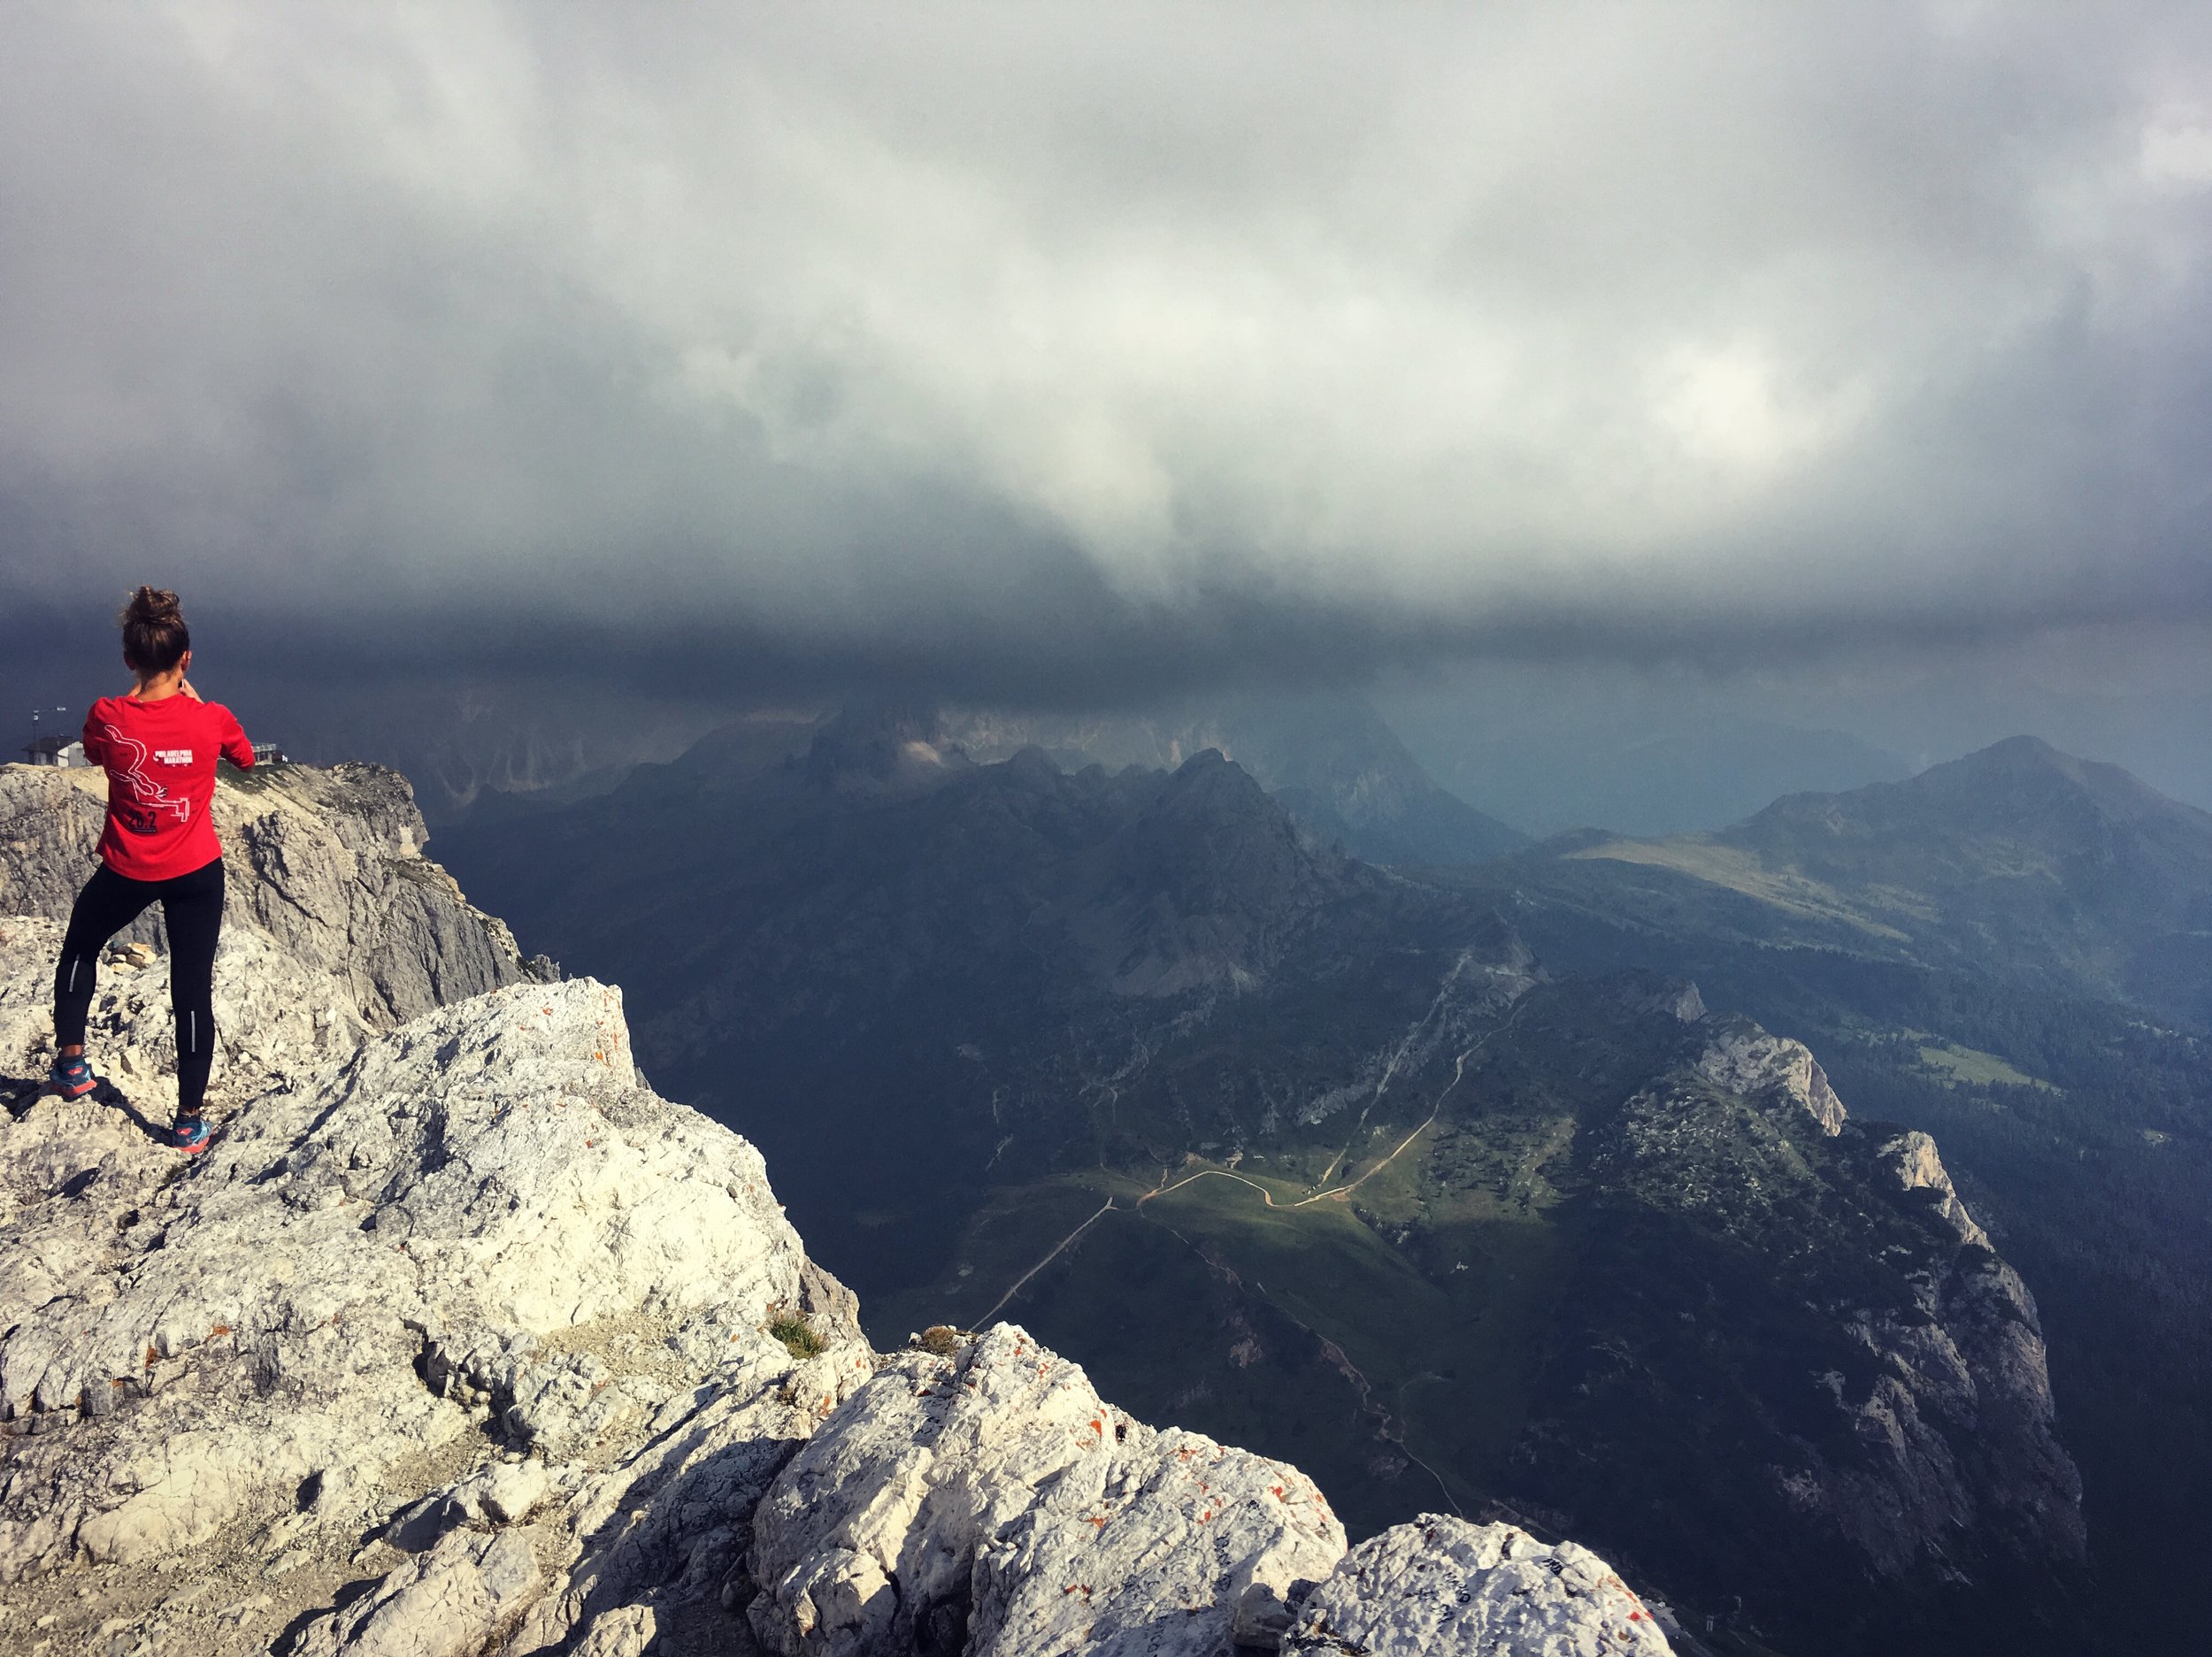  Dolomites Trail Running Alta Via 1 Hut to Hut RIfugio Fanes to Rifugio Lagazuoi 